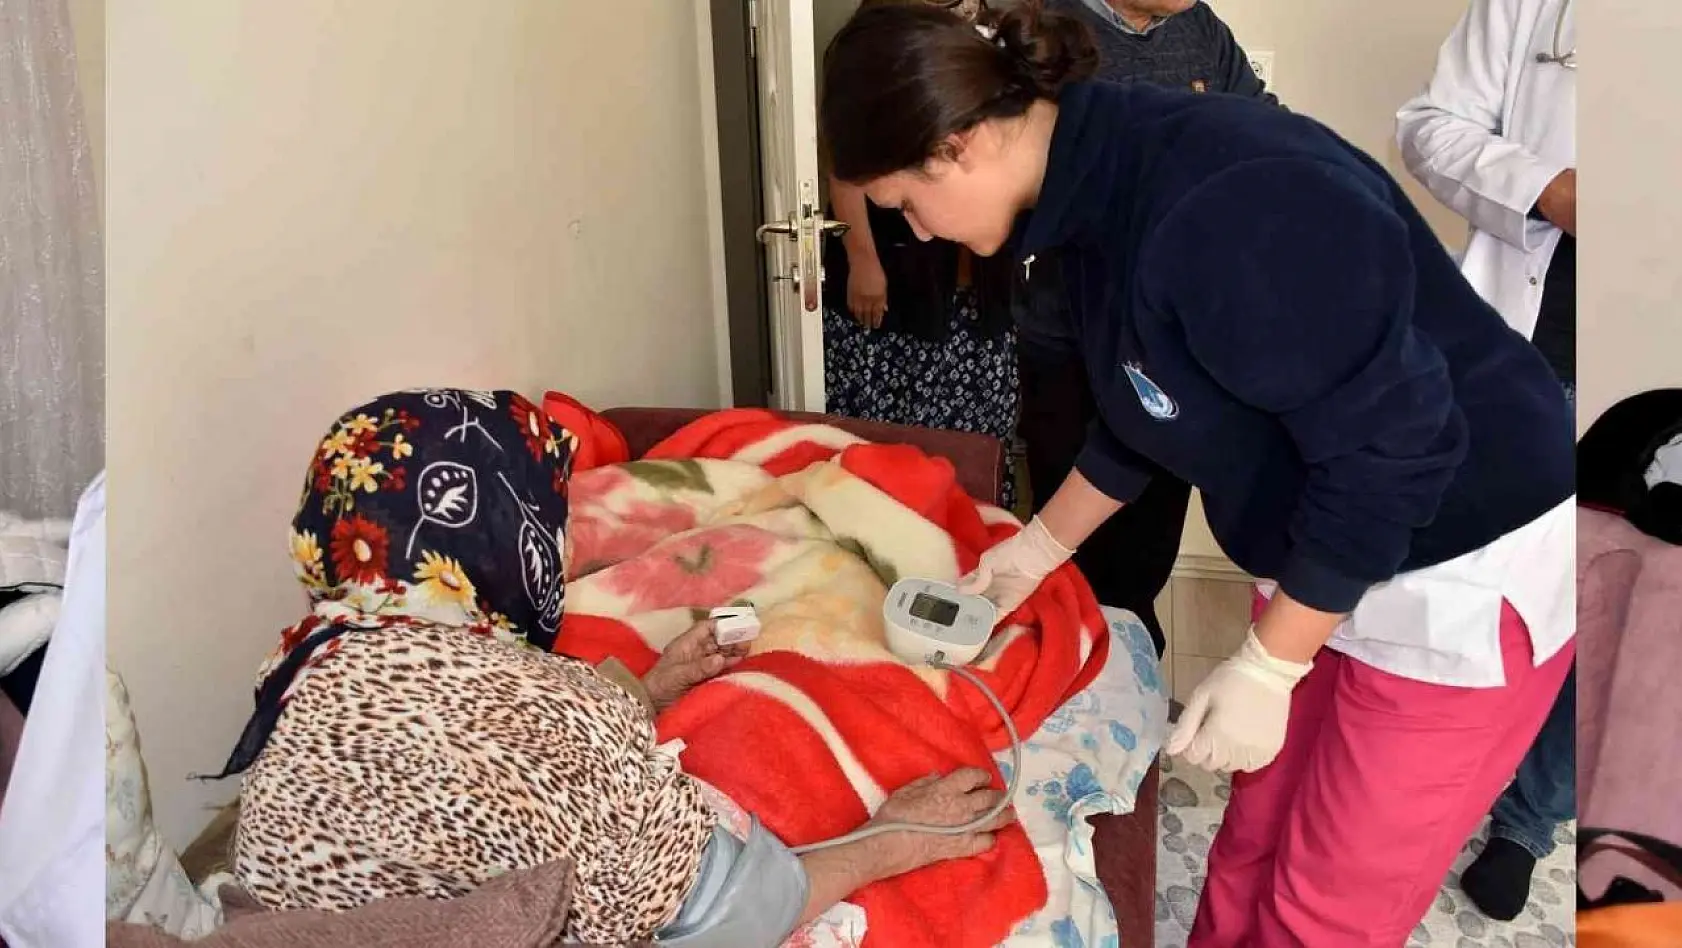 Yunusemre'nin 'Evde Sağlık Hizmeti' yaralara ilaç oluyor